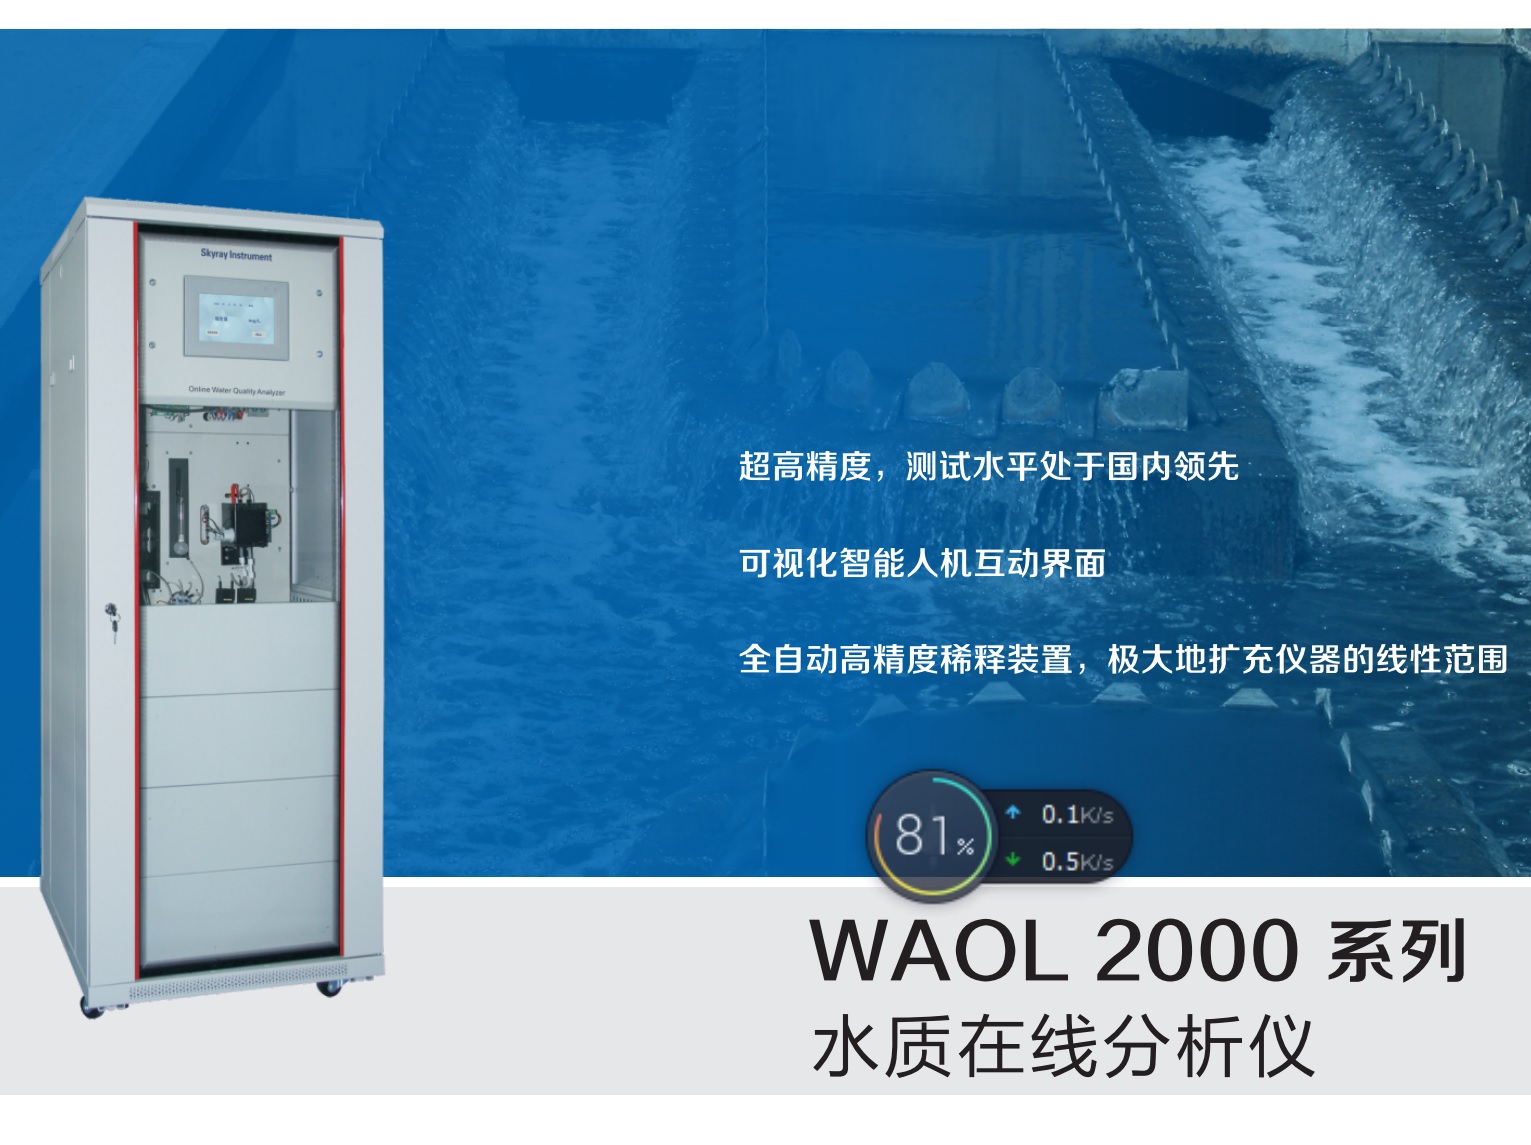 Jiangsu Skyray Instrument Co., Ltd.-WAOL 2000 On line analysis of water quality